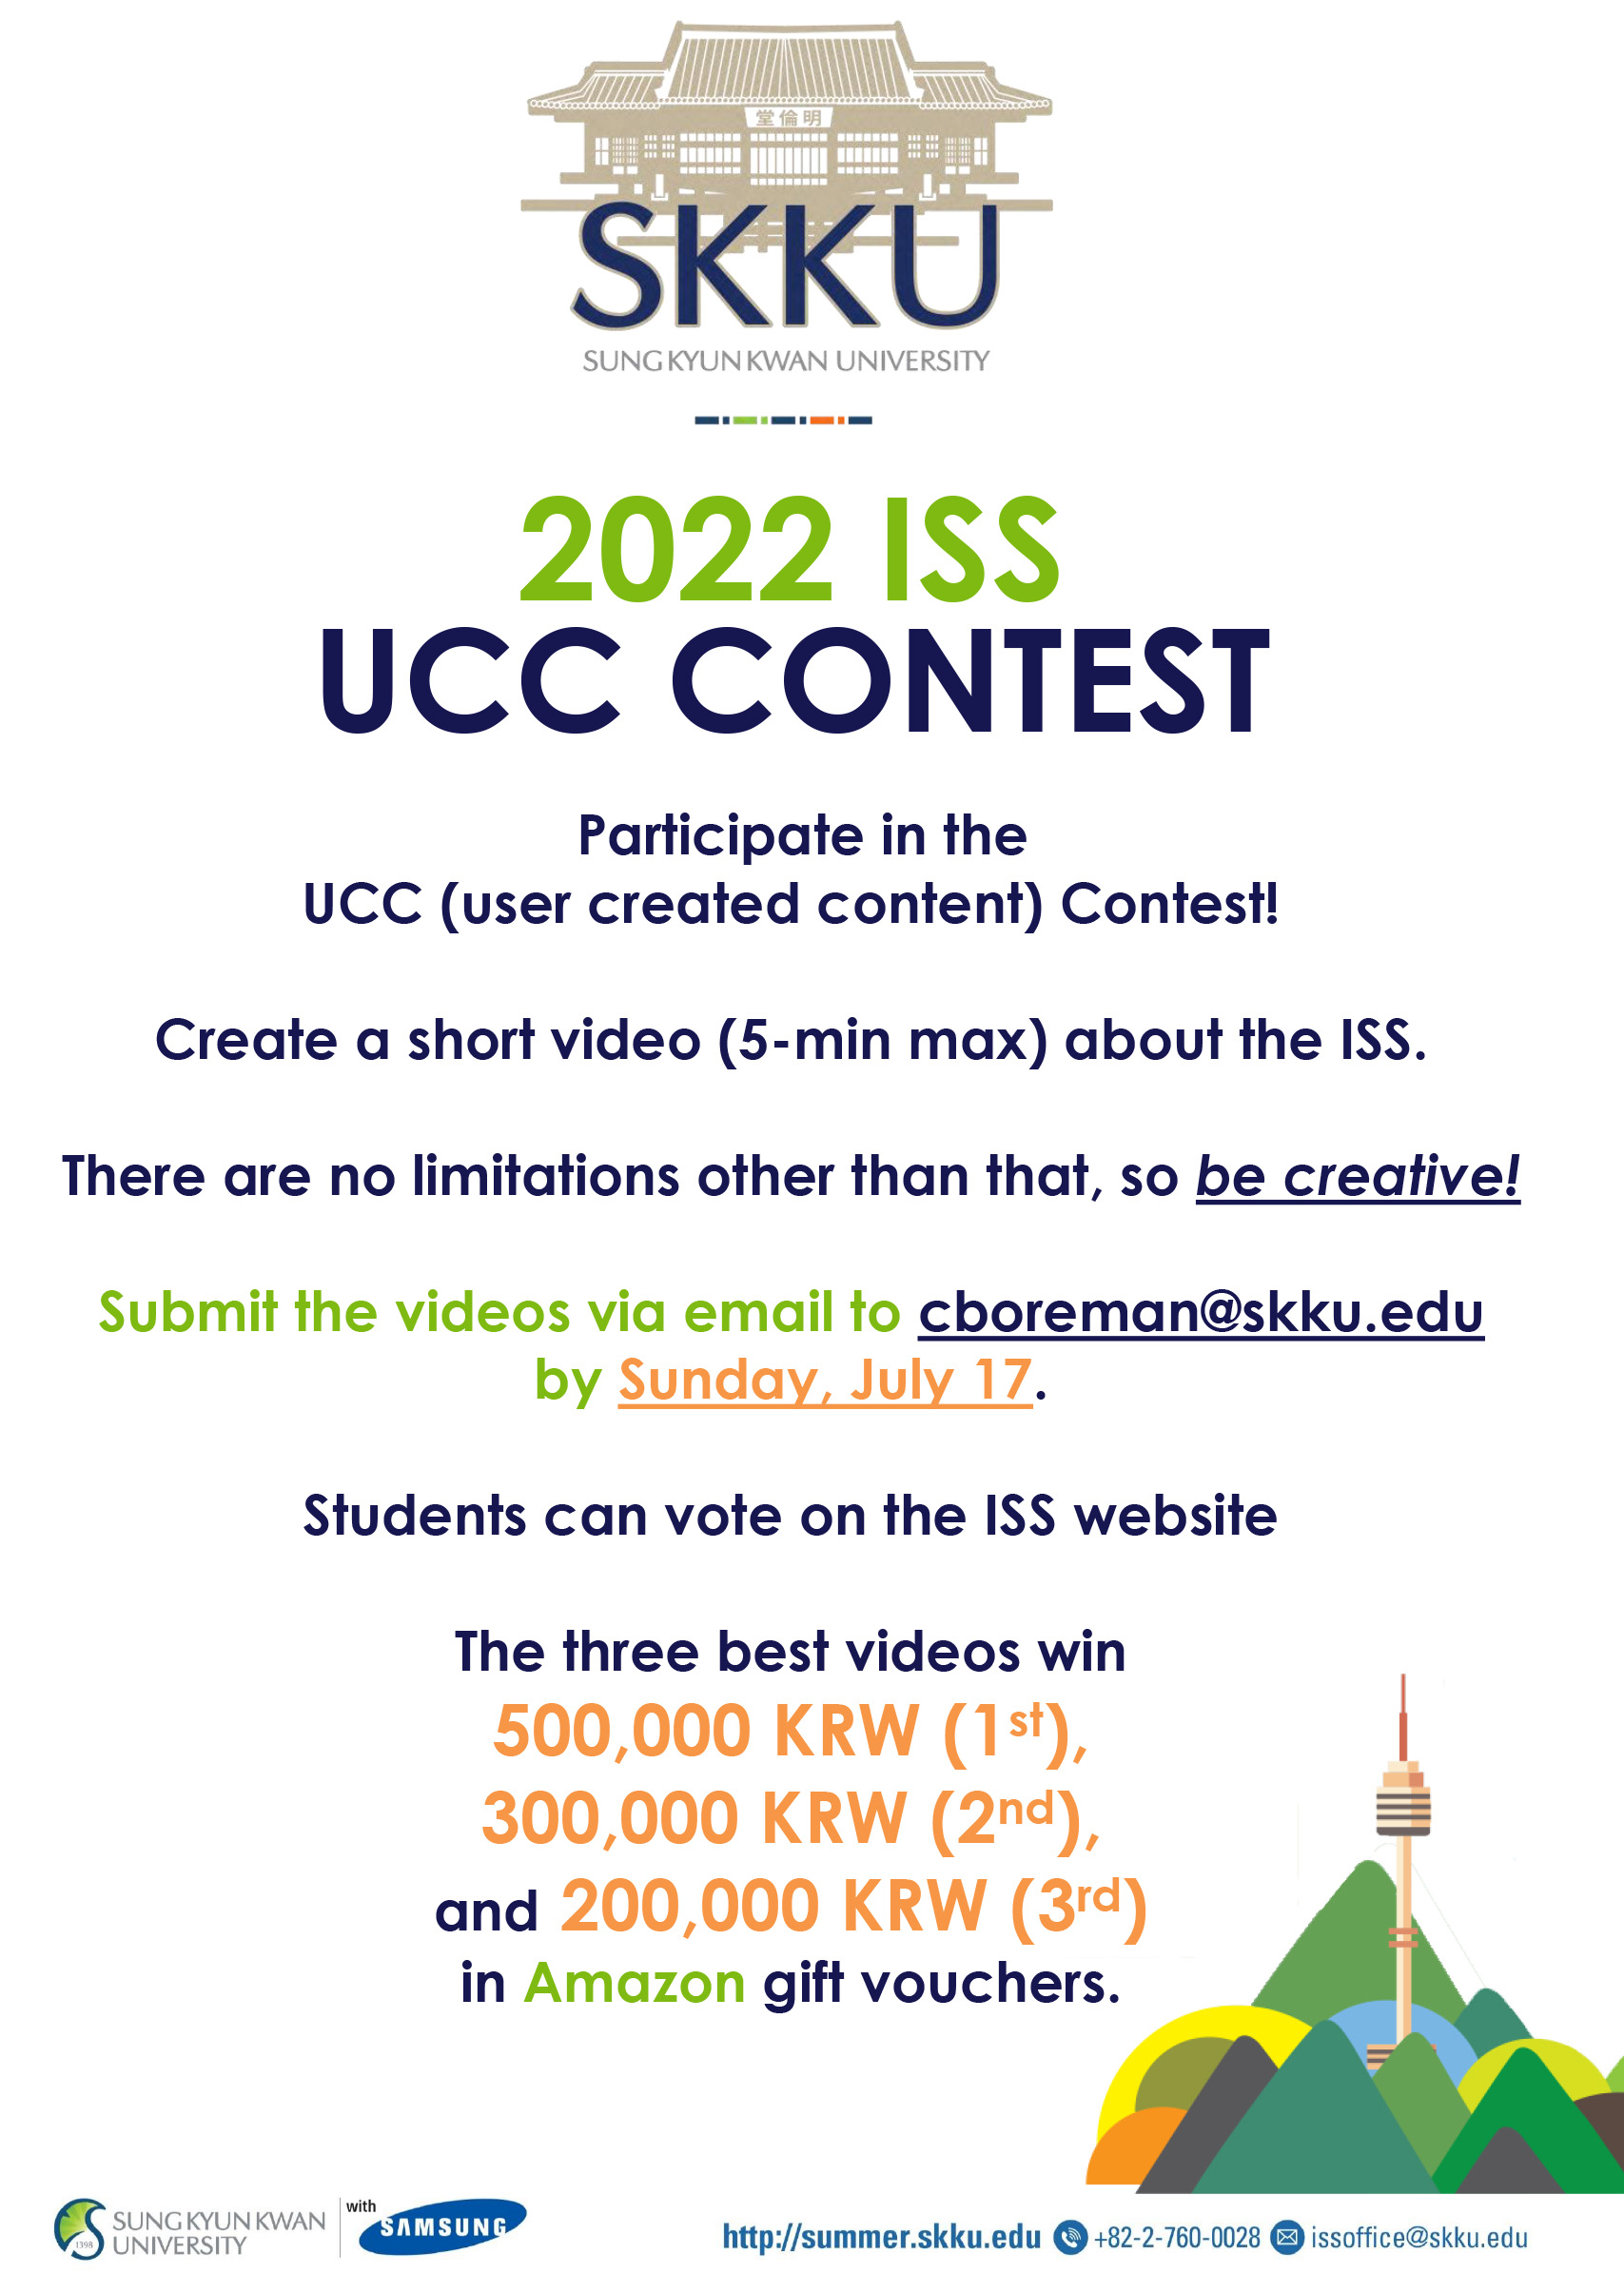 2022 SKKU ISS UCC Contest